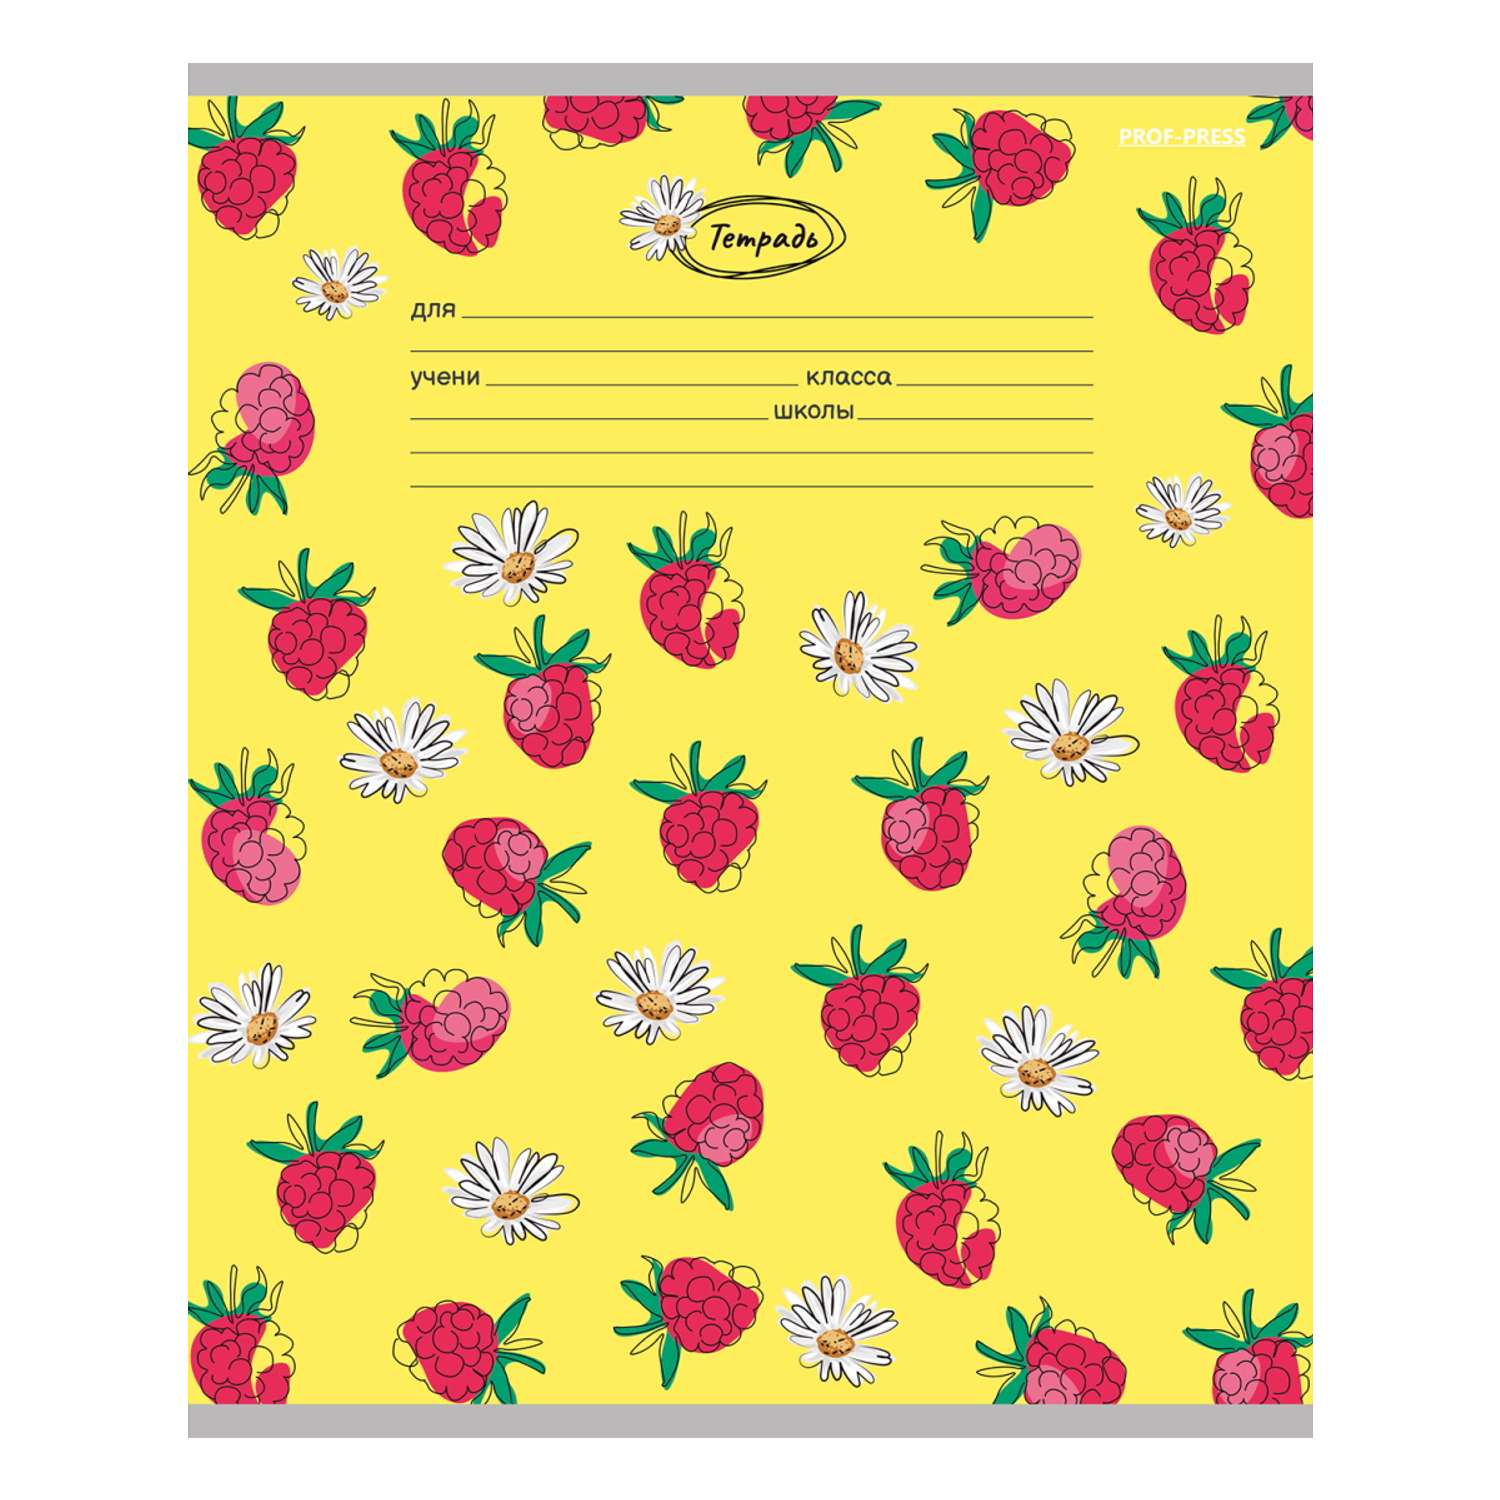 Тетради Prof Press Линия 18л. ягодки и цветы цветная мелованная обложка комплект 10 штук - фото 2